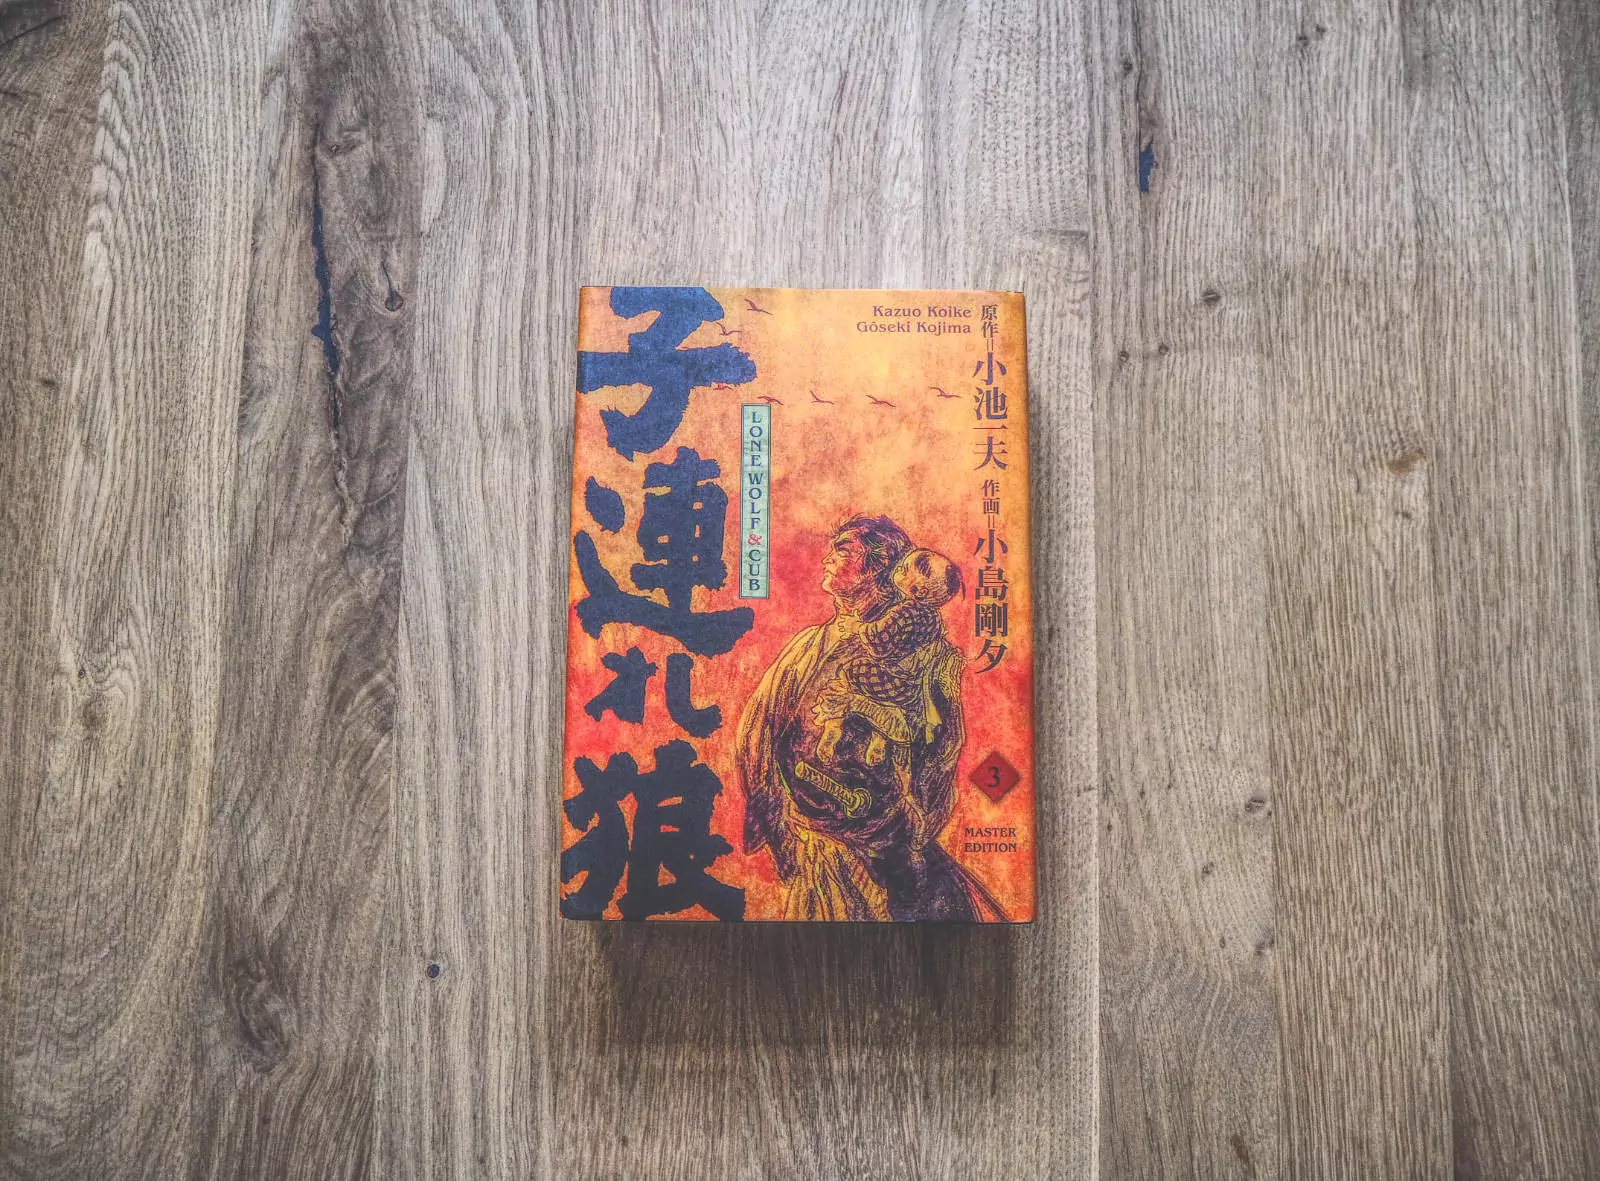 Ein Buch mit japanischer Schrift auf einem Holzboden.